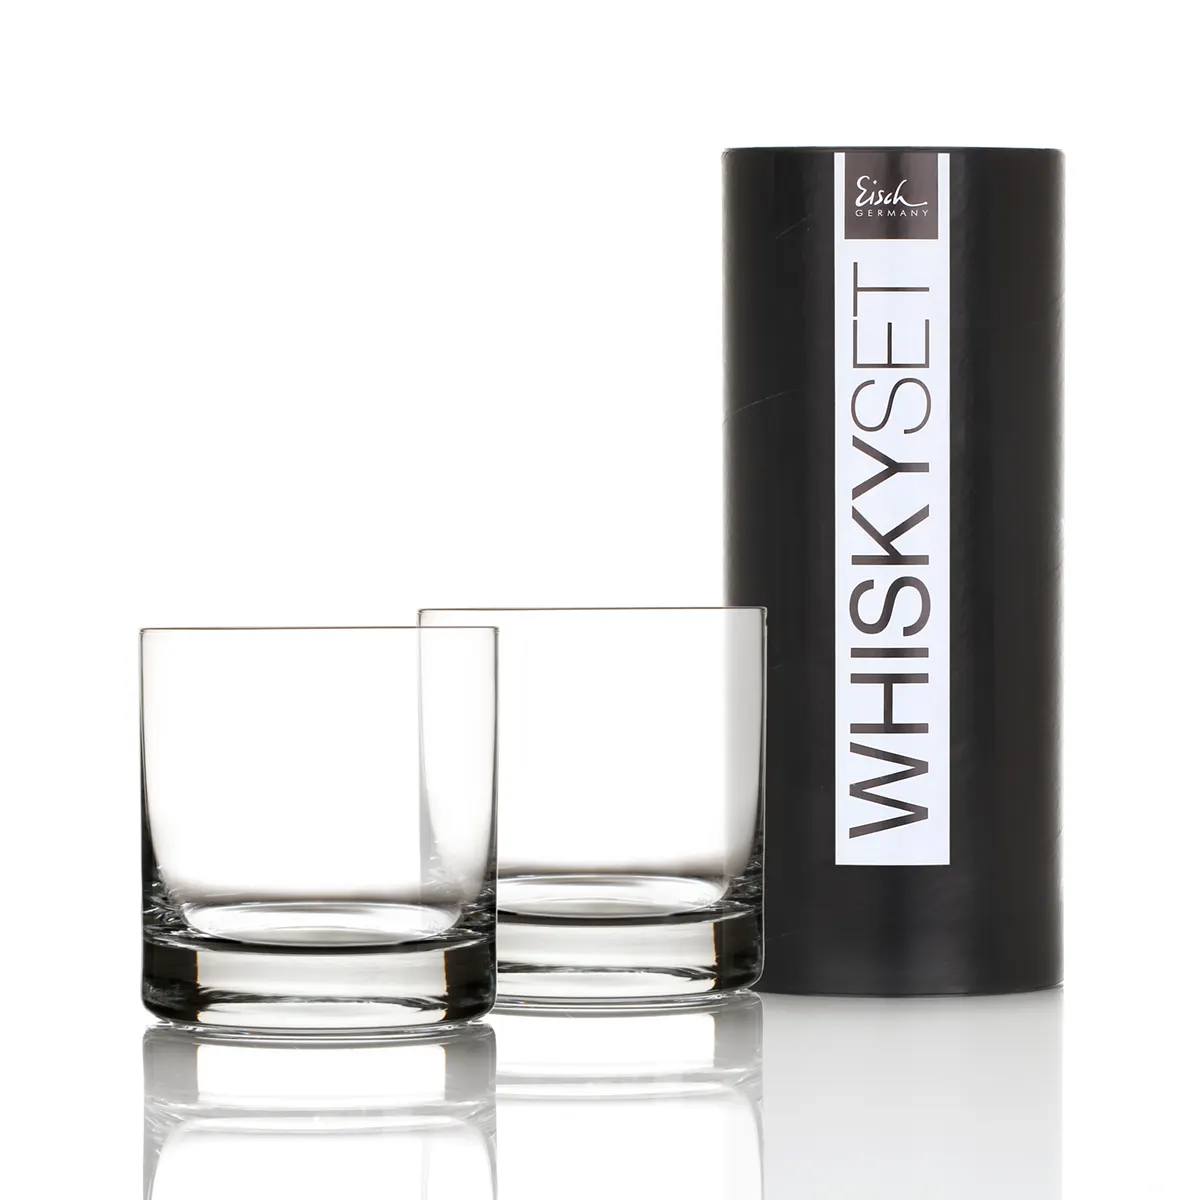 Eisch Whiskyglas Gentleman - Platin - 2 Stück in Geschenkröhre